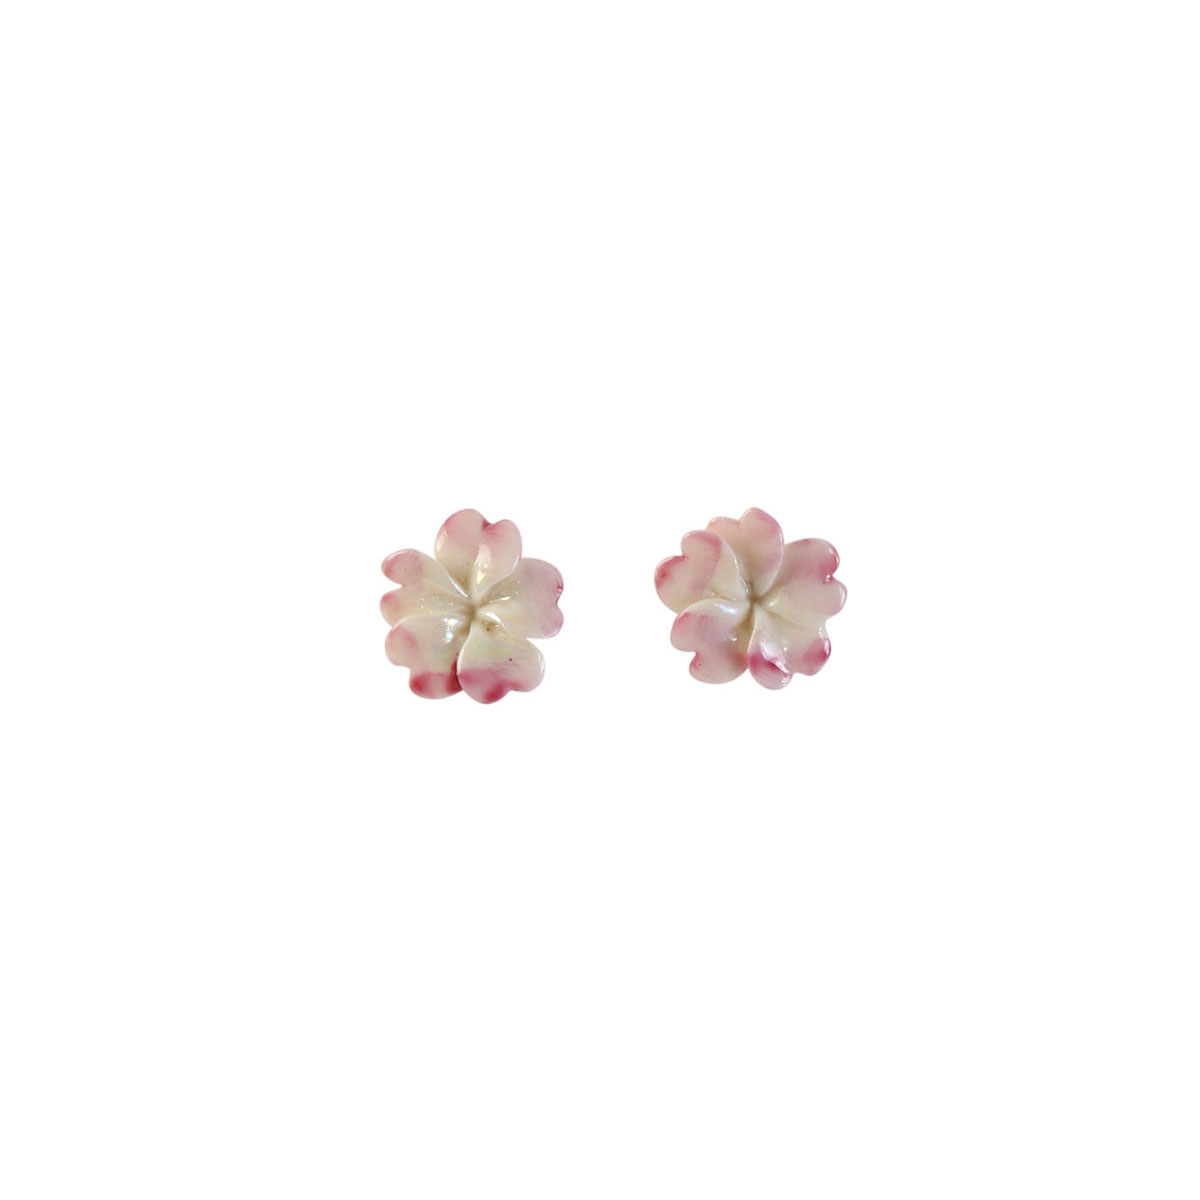 Belleek Porcelain Jewelry Plumeria Earrings Pink, Pair